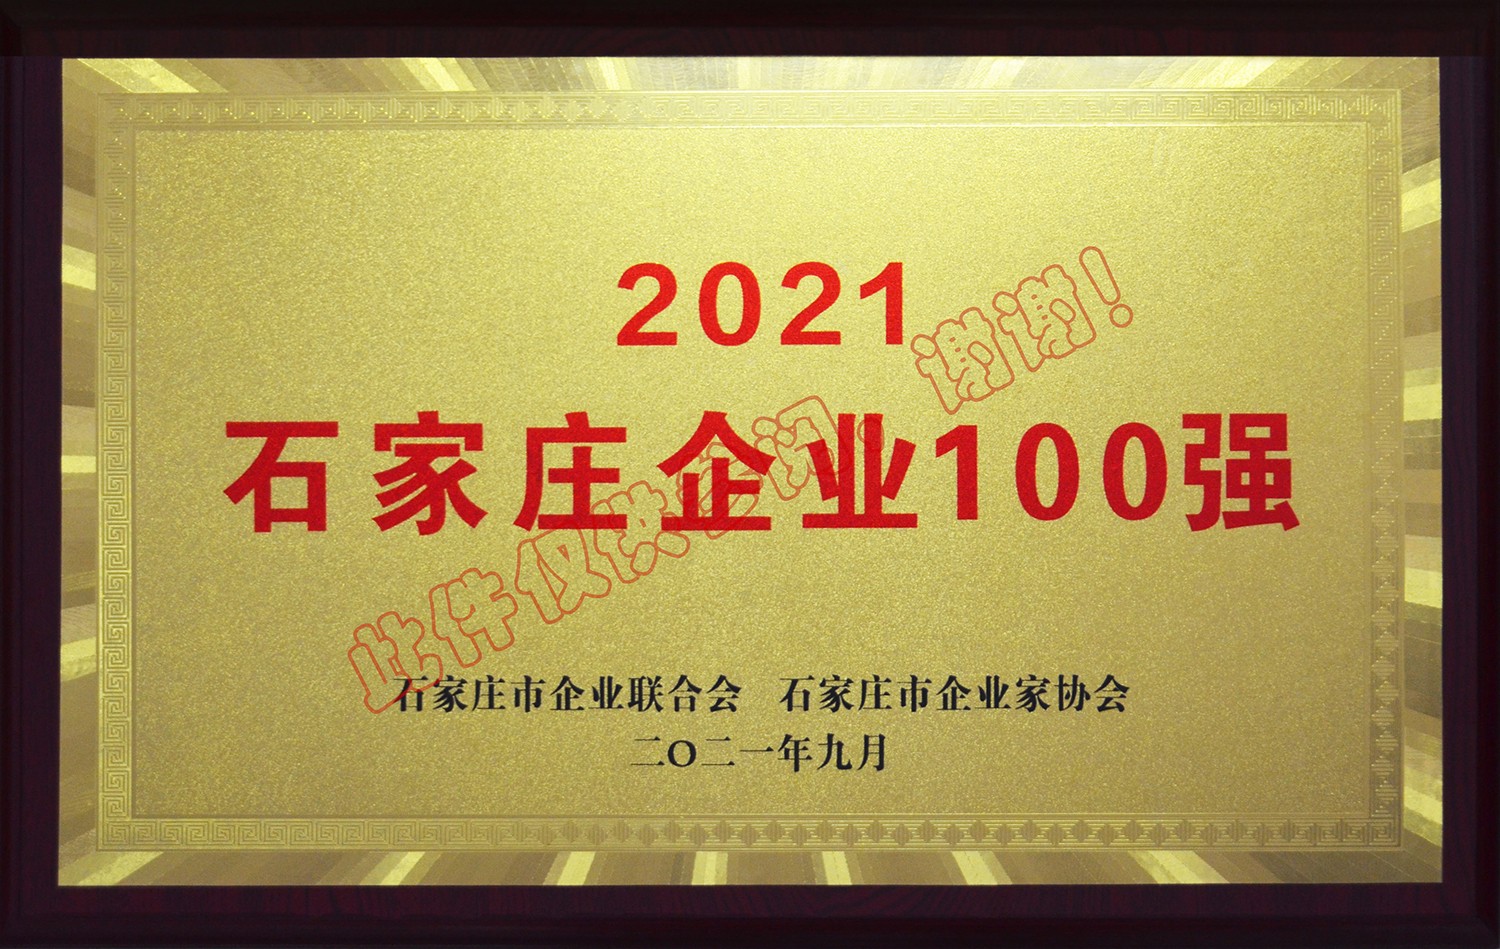 2021年度石家莊企業100強